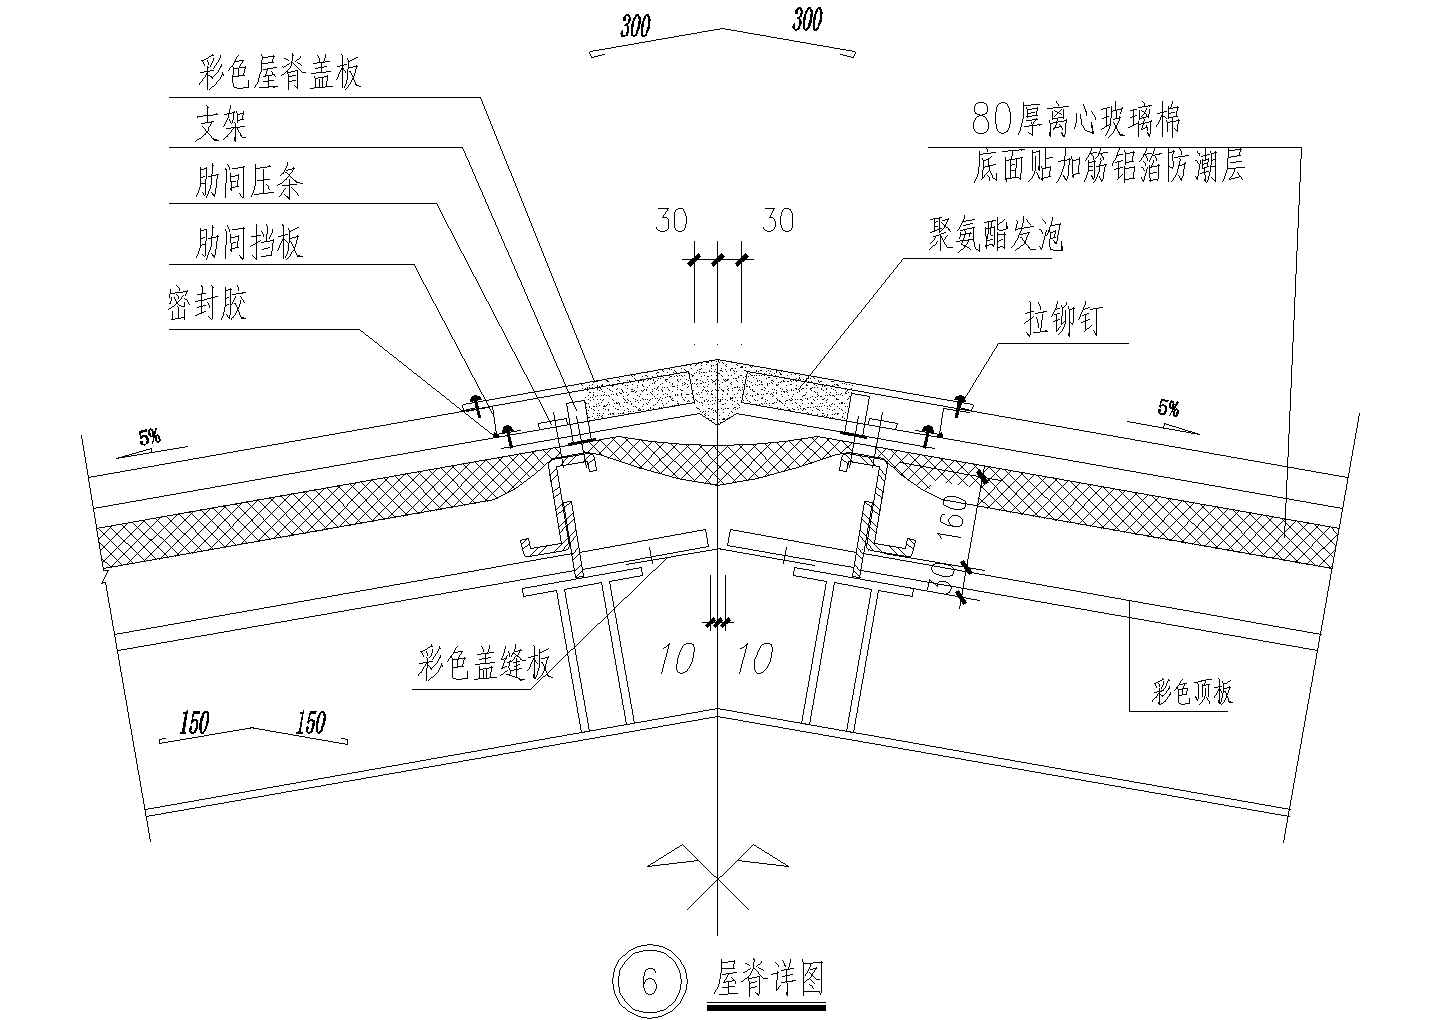 厂房设计_武汉市某电子厂钢结构加工厂房屋脊节点设计CAD图纸